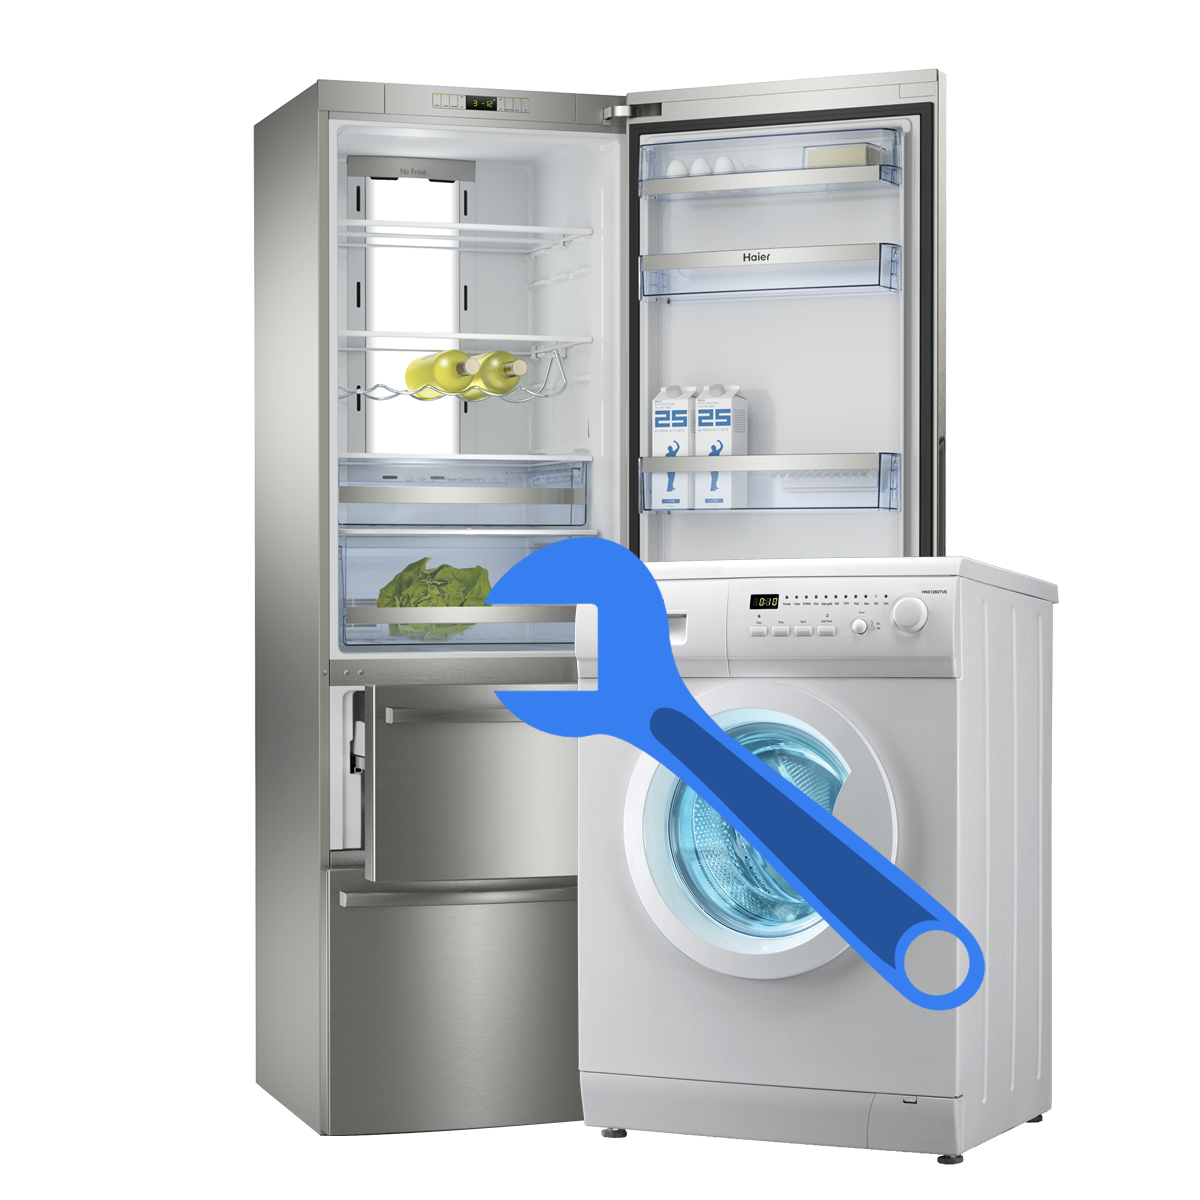 ремонт холодильников и стиральных машин